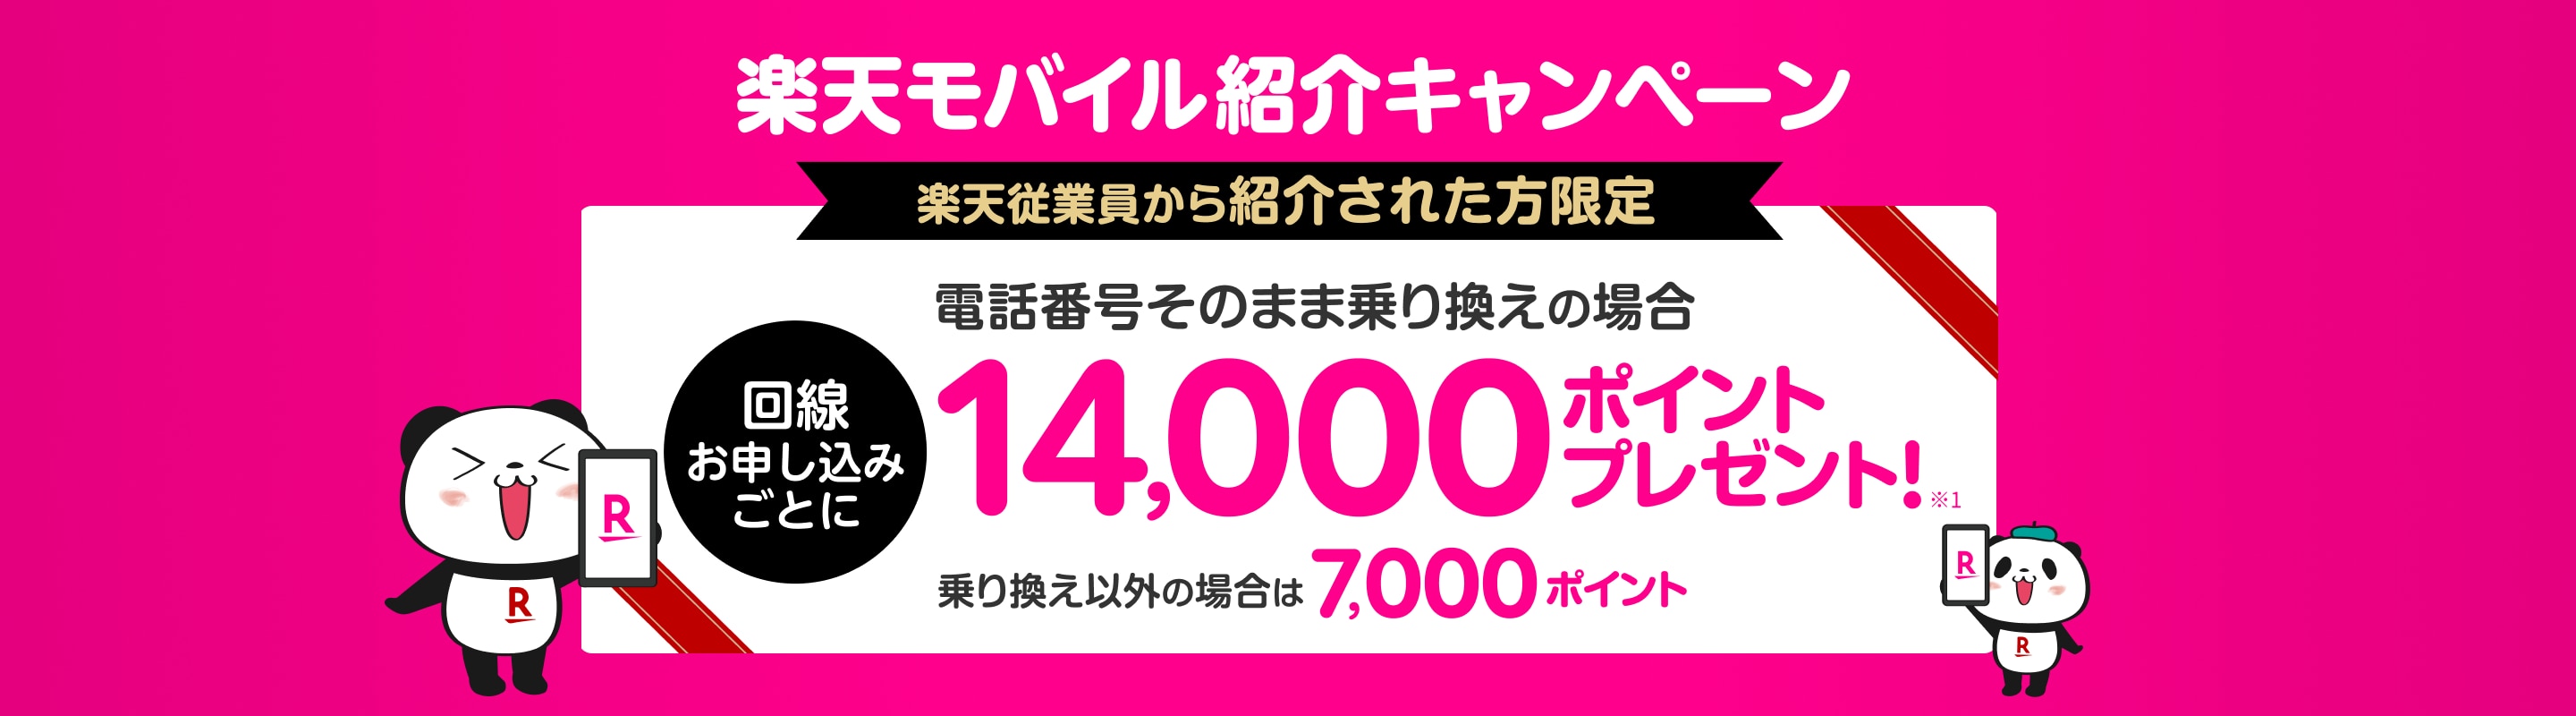 特別なお客様へのご案内 Rakuten最強プラン紹介キャンペーン！楽天従業員から紹介された方限定 電話番号そのまま乗り換えの場合回線お申し込みごとに14,000ポイントプレゼント 乗り換え以外の場合は7,000ポイント